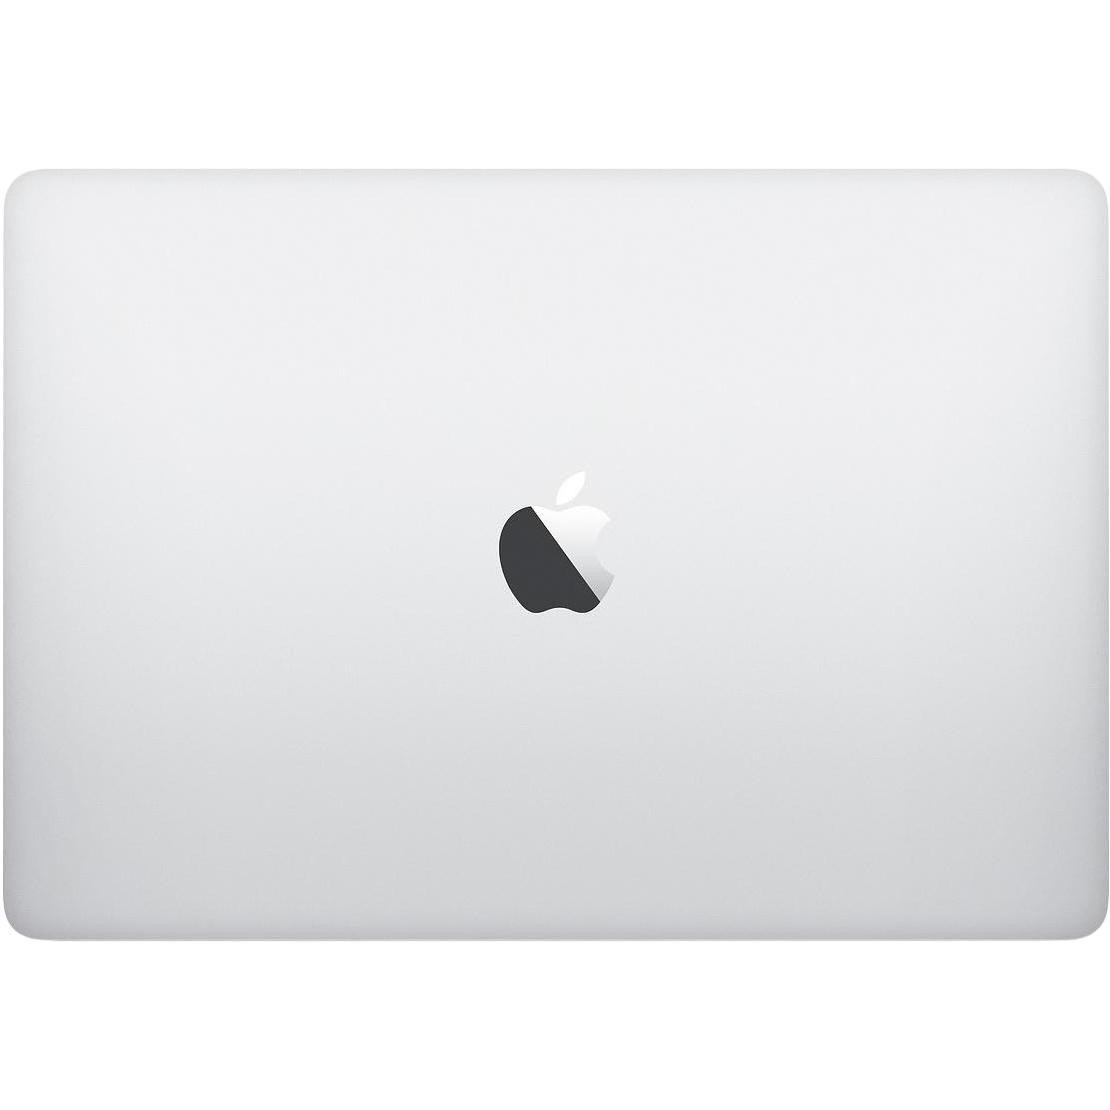 Apple MacBook Pro 15" Silver 2019 (MV922)